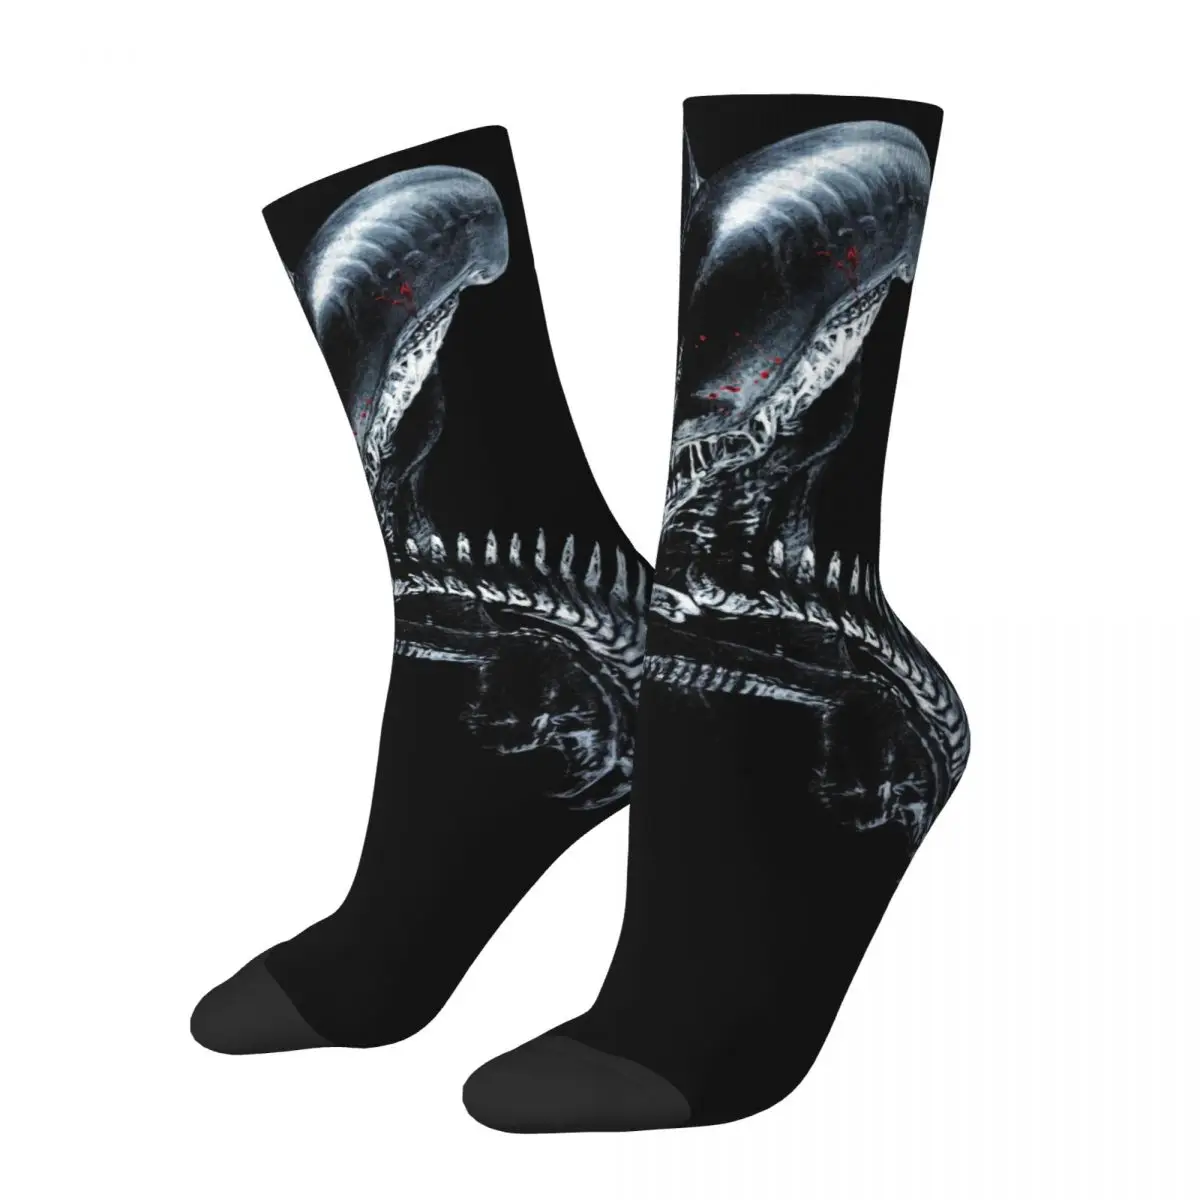 Xenomorph Essential Alien унисекс ветрозащитные носки с 3D принтом счастливые носки уличный стиль сумасшедшие носки gremlins gizmo mogwai носки унисекс беговые с 3d принтом счастливые носки уличный стиль сумасшедшие носки поиск вещей больше в магазине